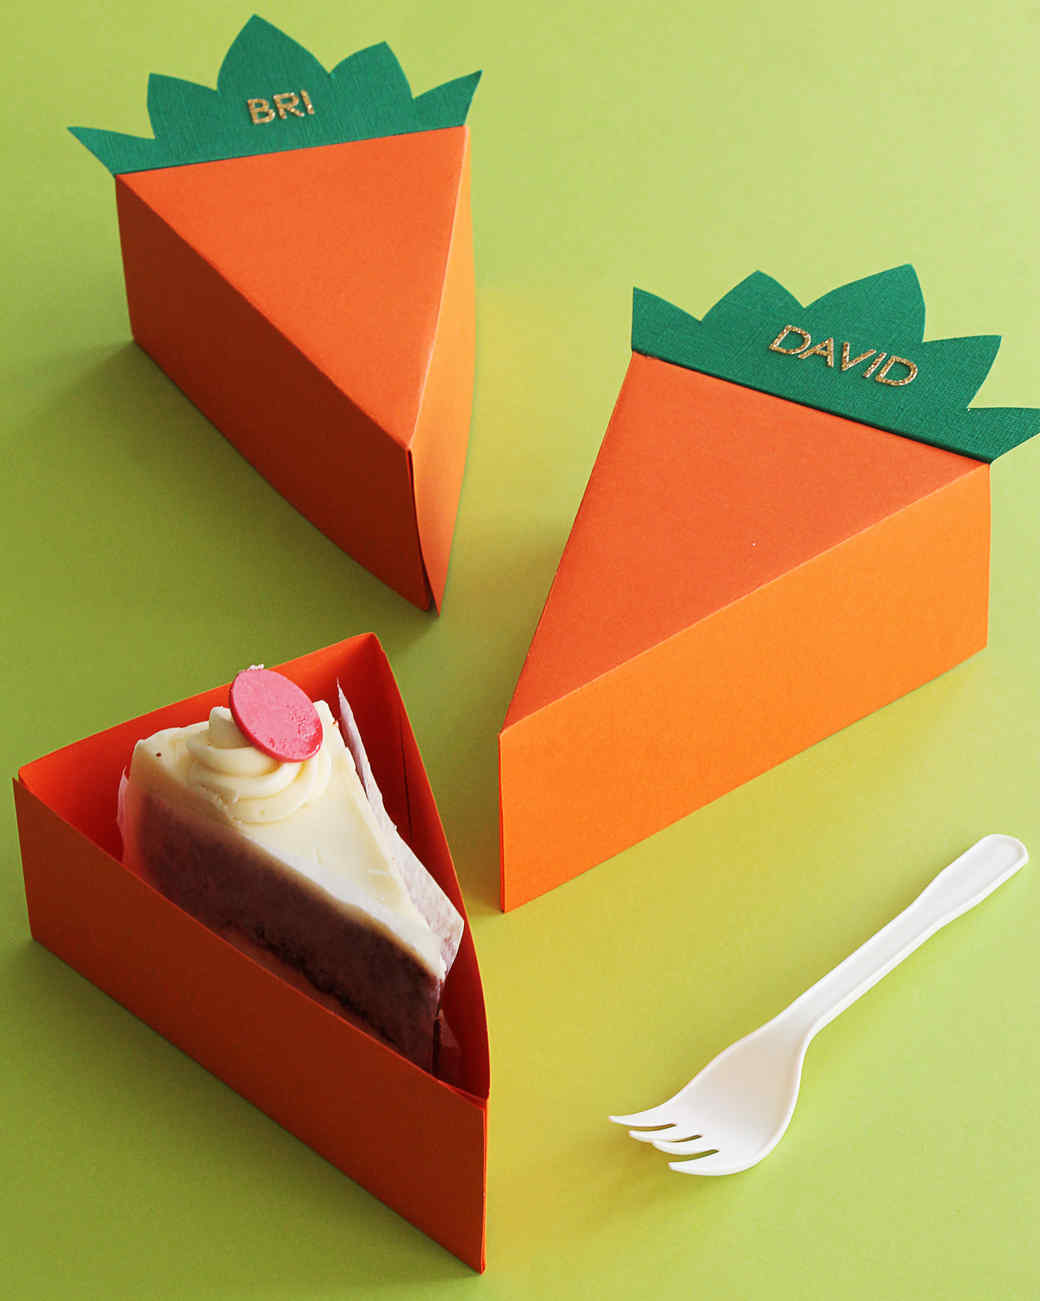 Risultati immagini per carrot cake illustration